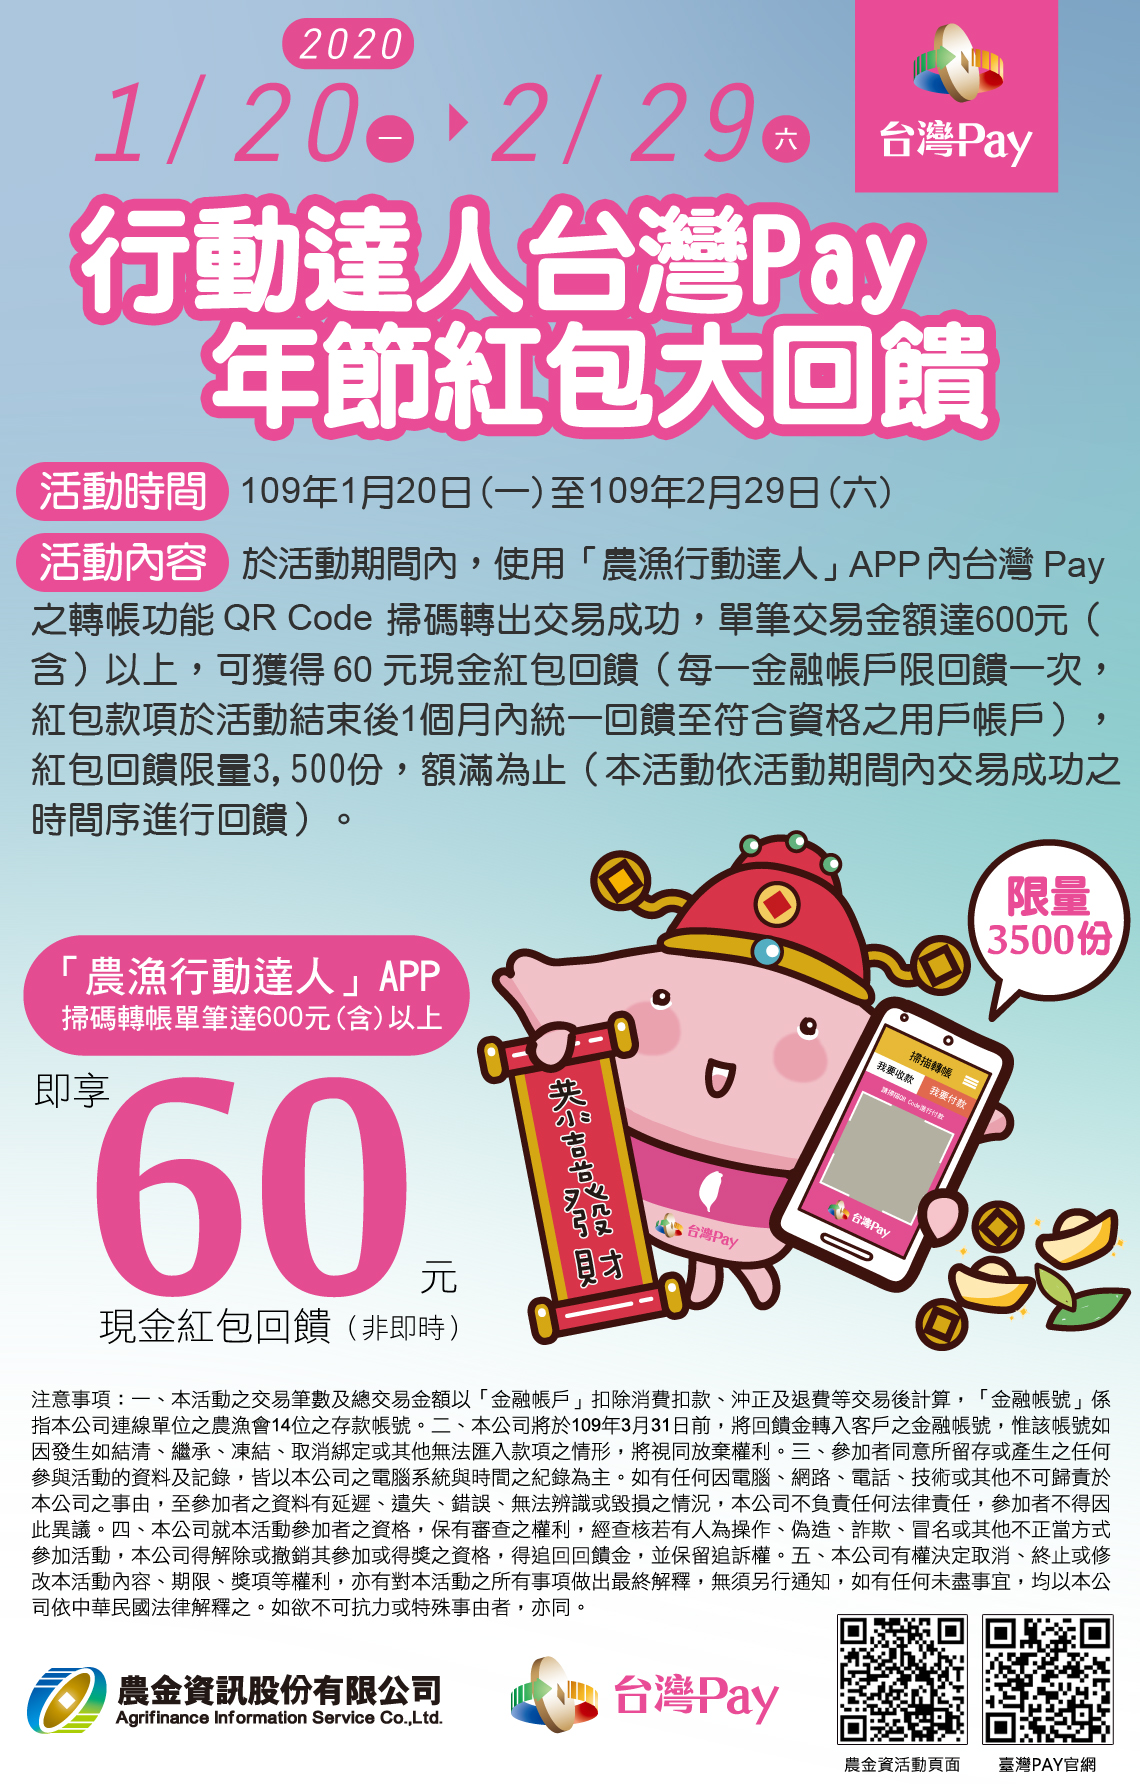 推廣農金資訊與財金公司合辦-行動達人台灣Pay年節紅包大回饋